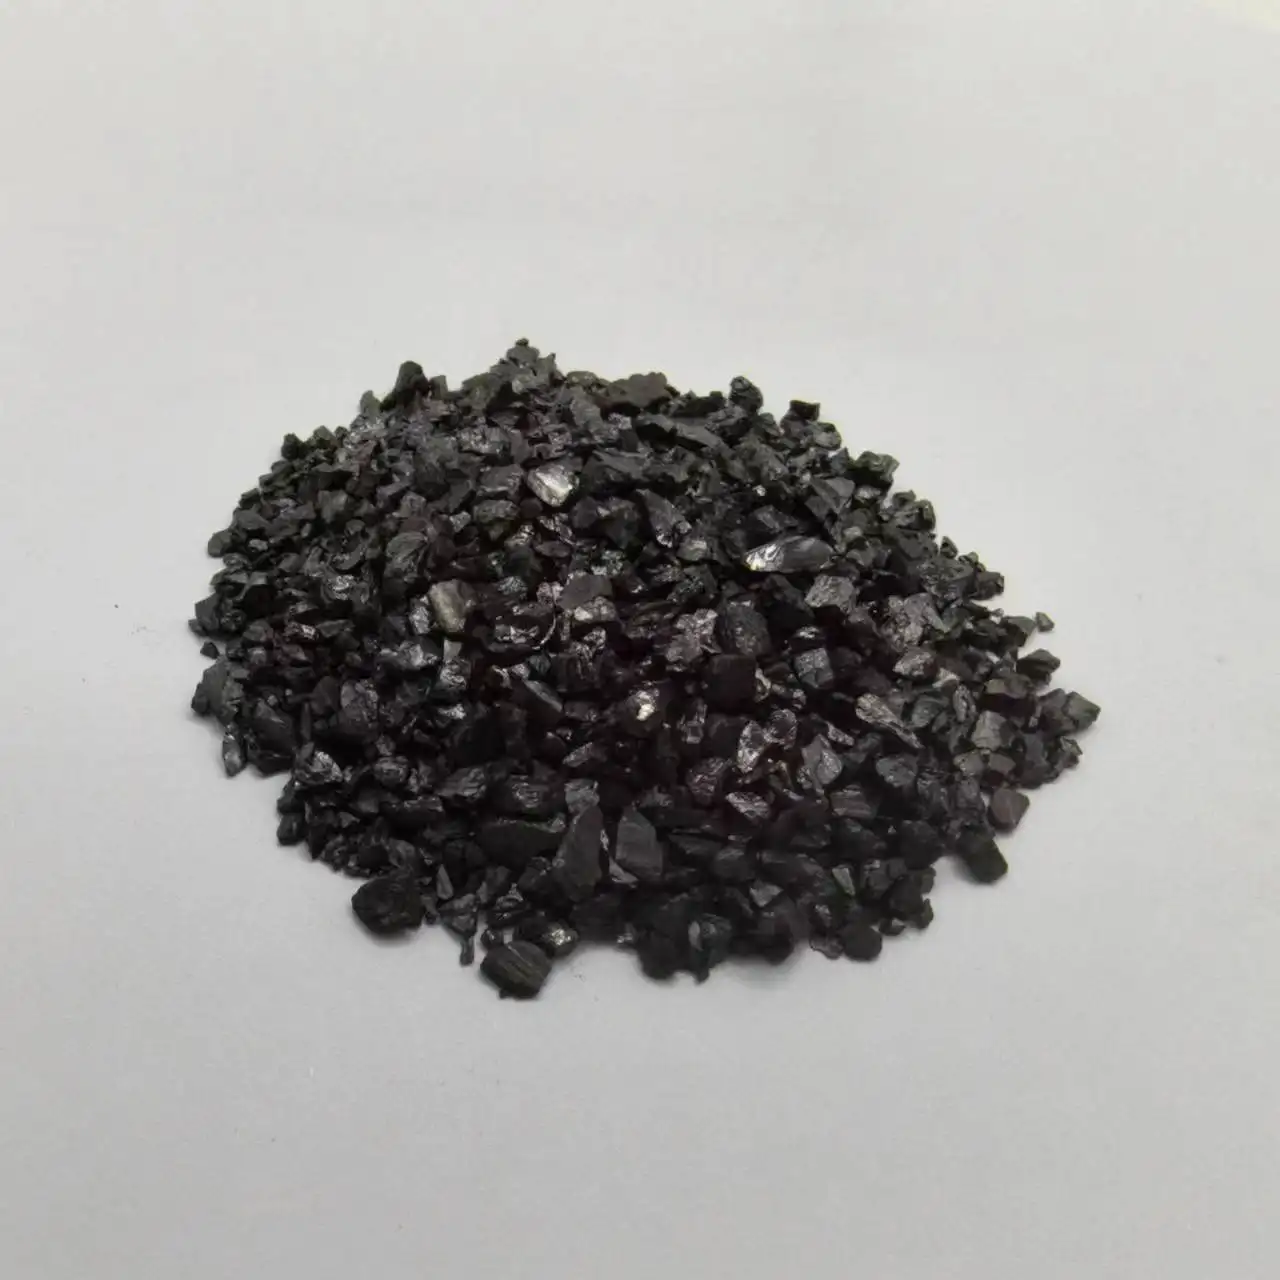 कार्बन ब्लैक हाई सल्फर पेट्रोलियम कोक का अनुकूलित ग्रेफिटाइजेशन कैलक्लाइंड पेट्रोलियम कोक